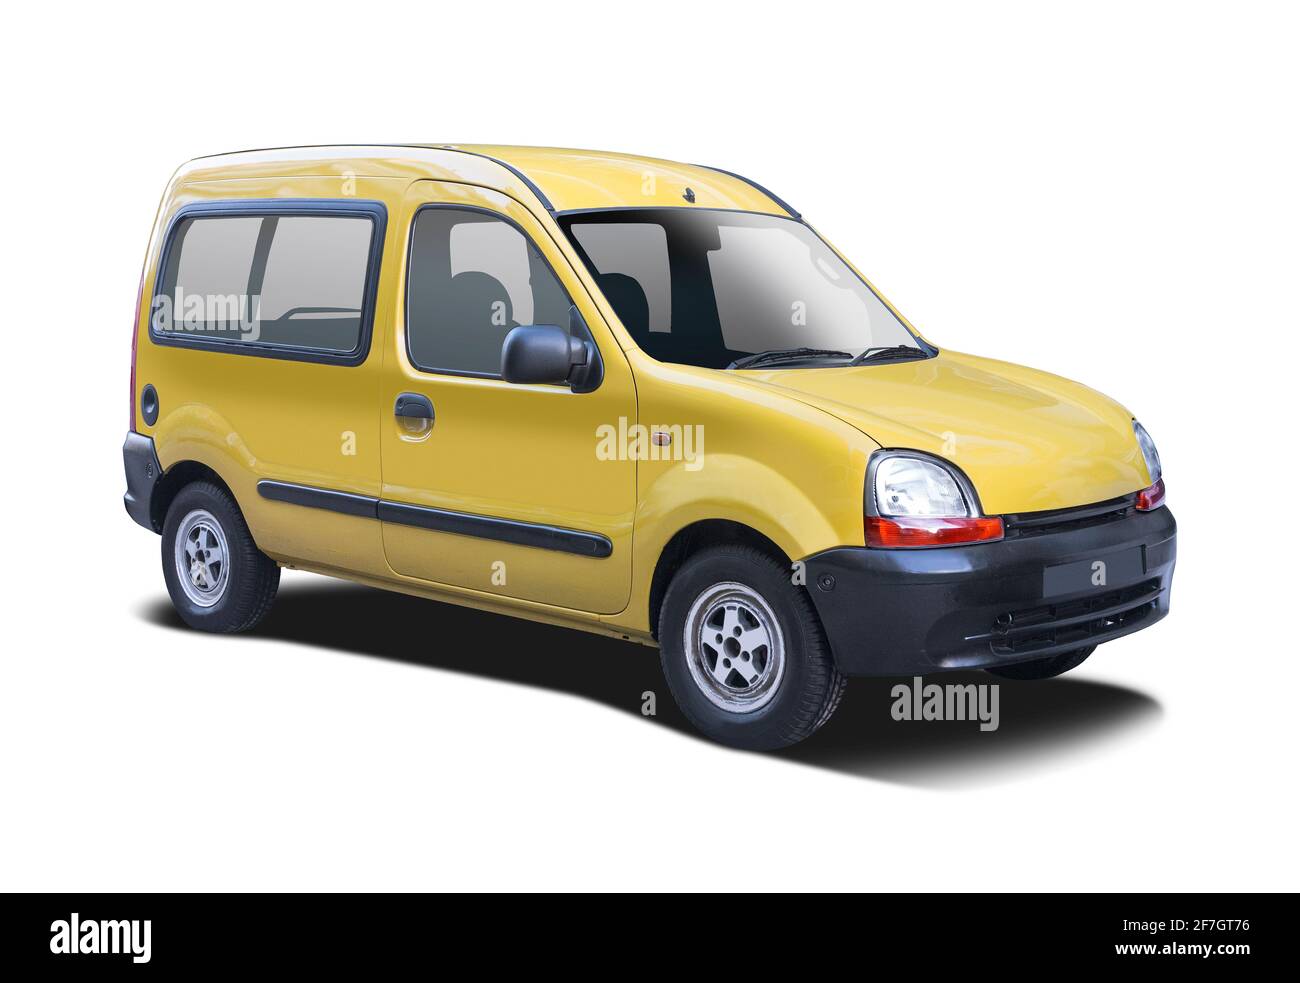 Renault Kangoo jaune isolé sur fond blanc Banque D'Images